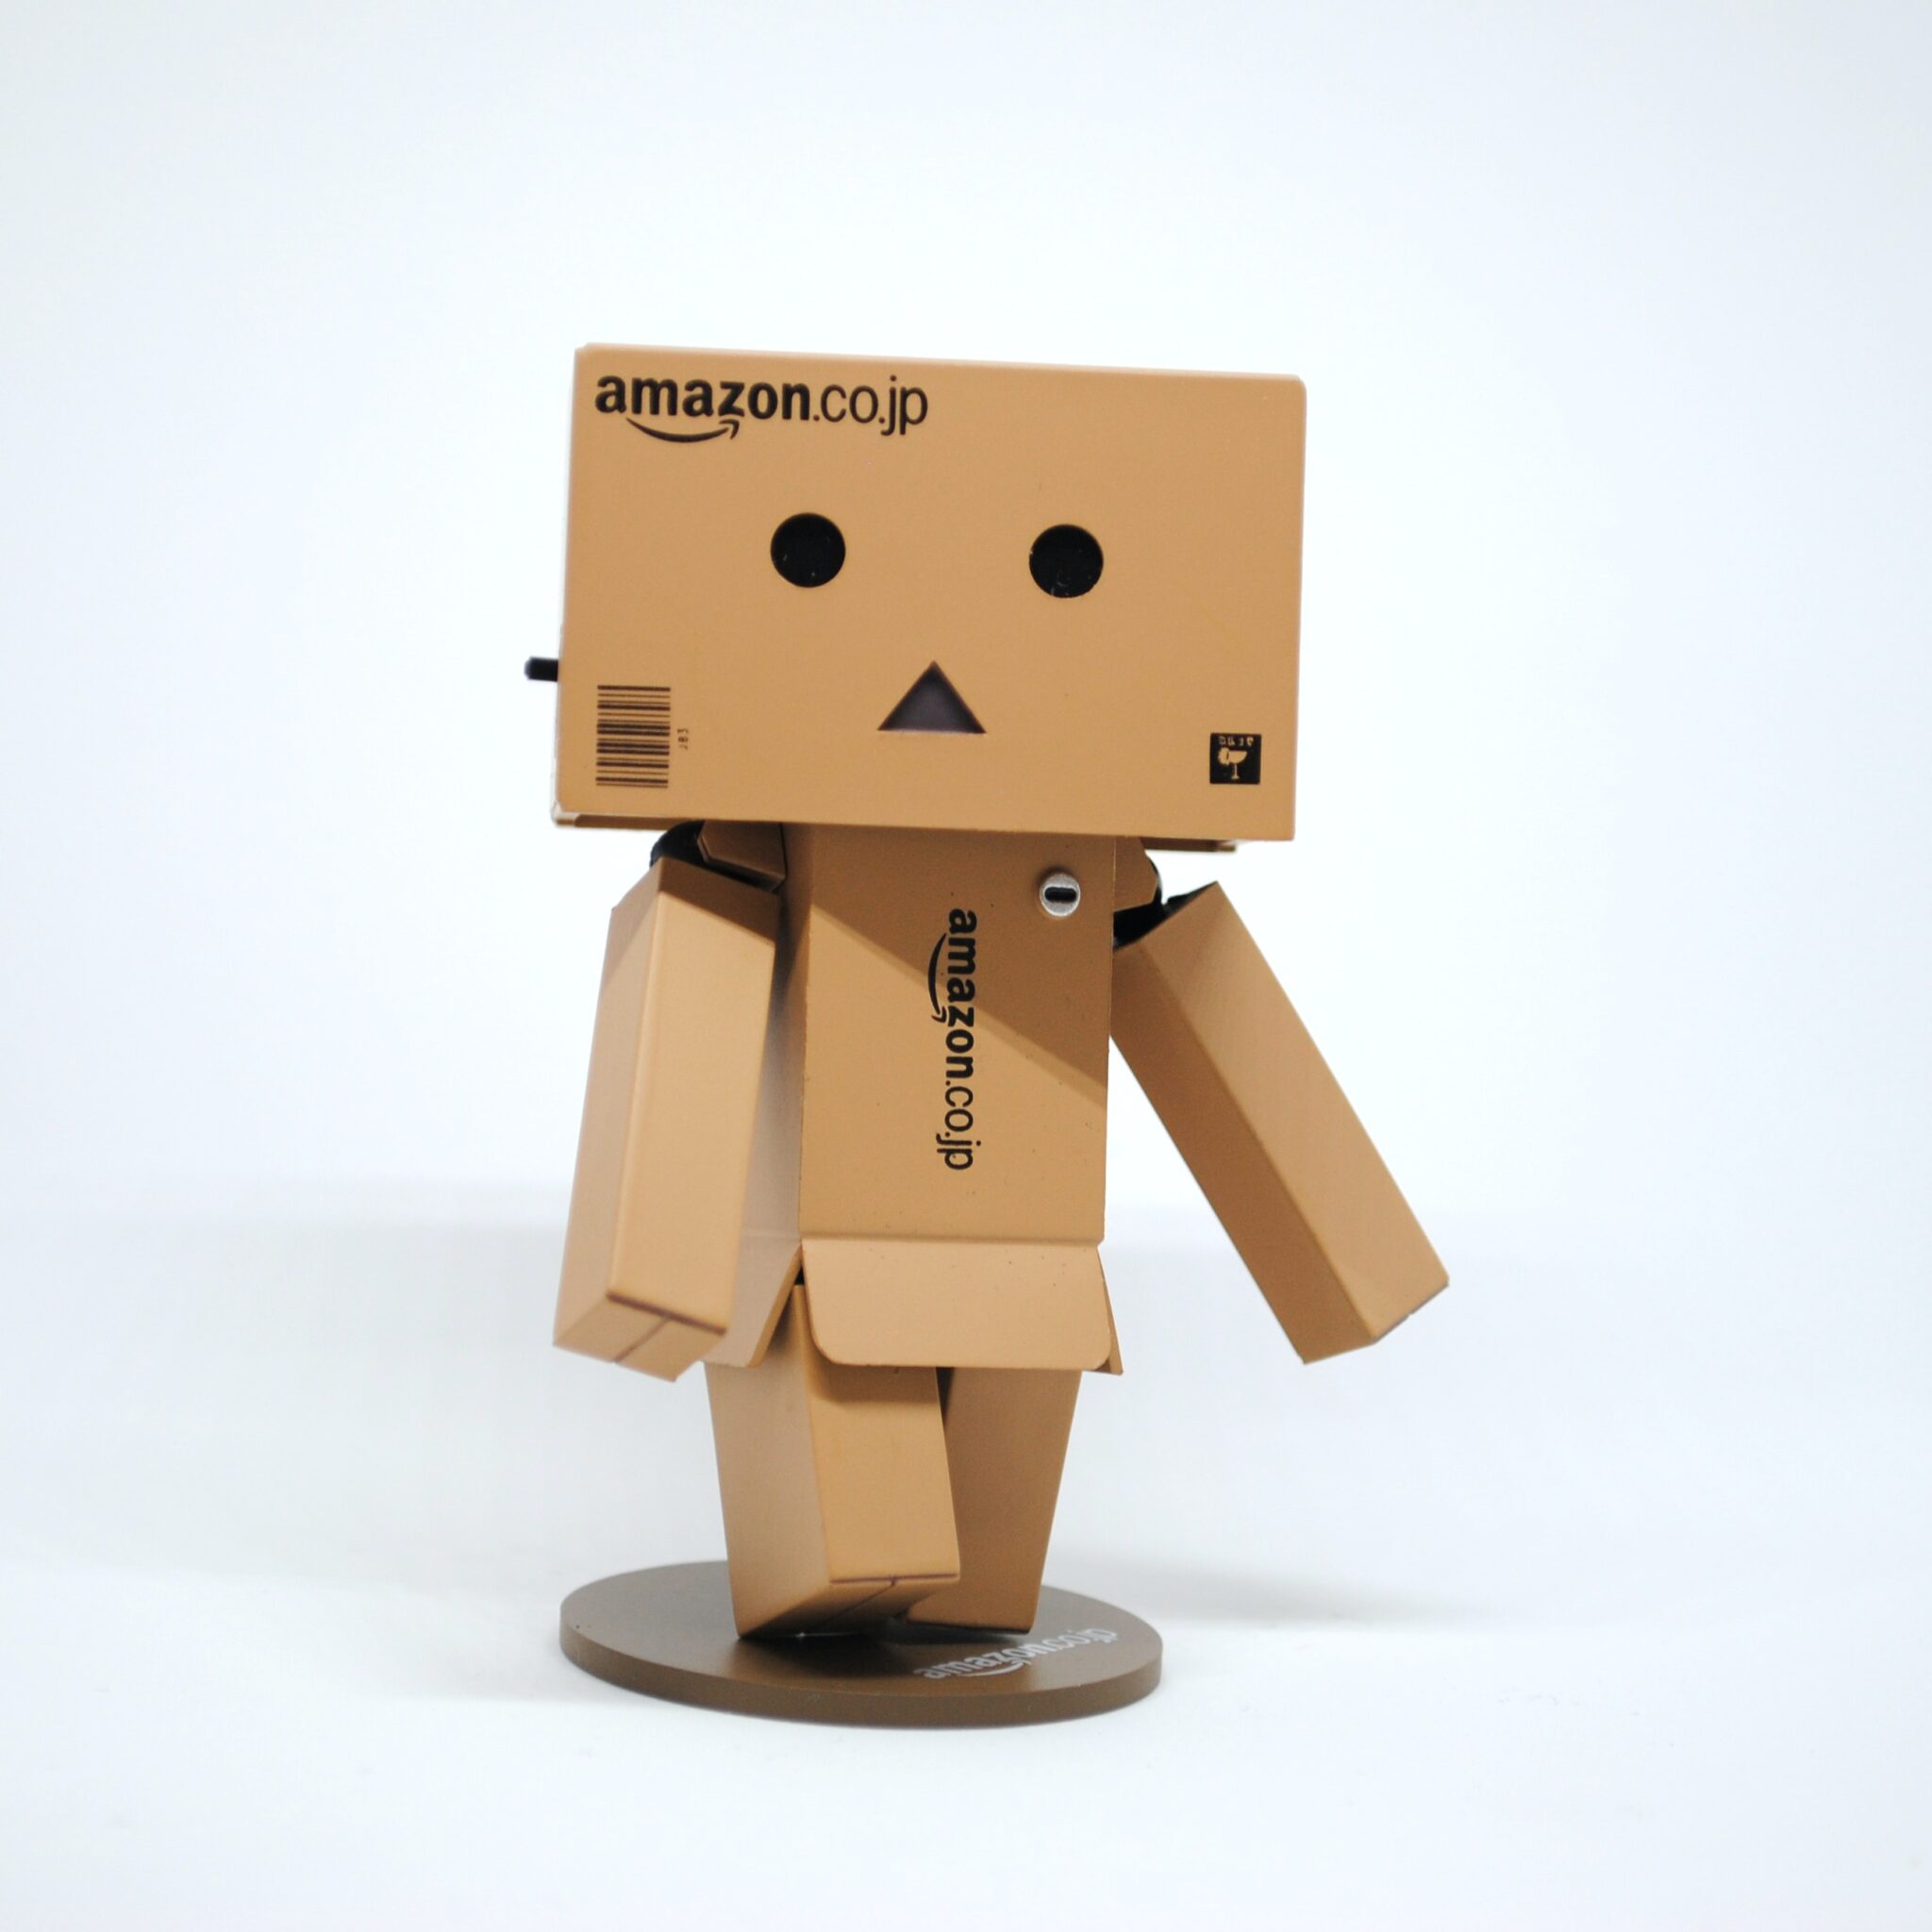 Amazon FBA: Cómo Aprovechar al Máximo el Servicio de Logística y Aumentar tus Ingresos